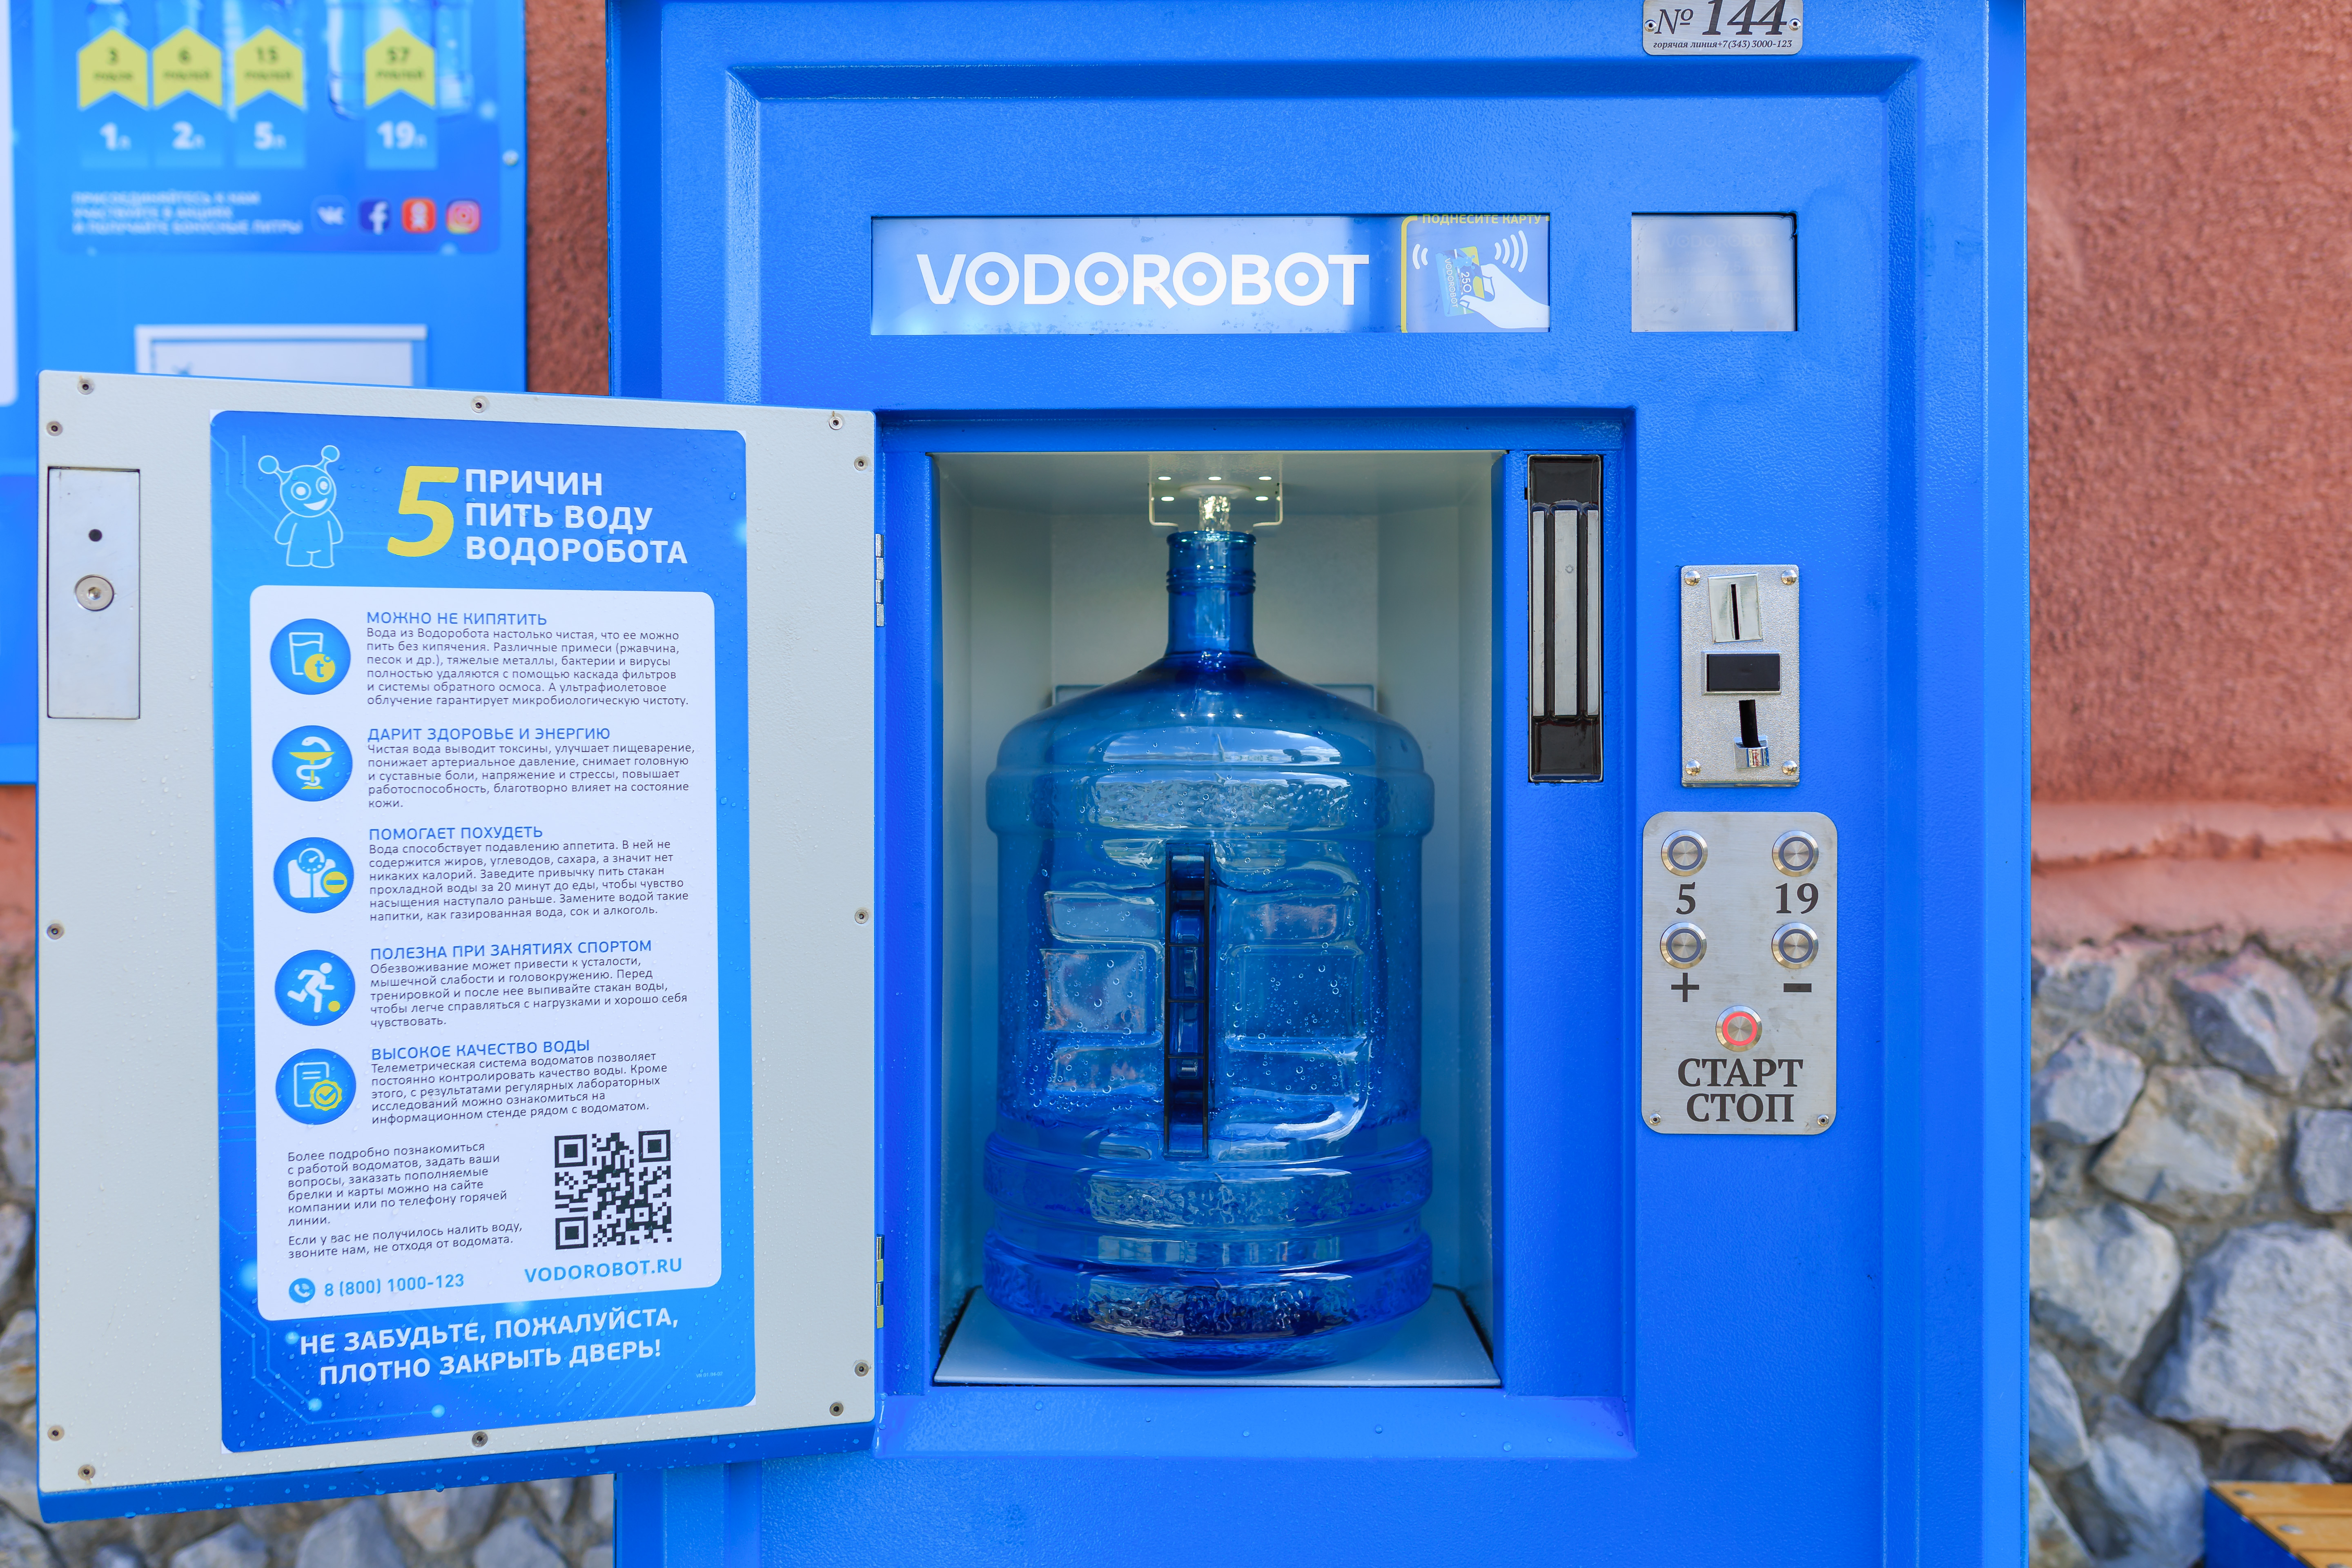 Вода питьевая аварийная. Автомат питьевой воды. Автомат с бутилированной водой. Водоробот автомат. Аппарат для питьевой воды на улице.